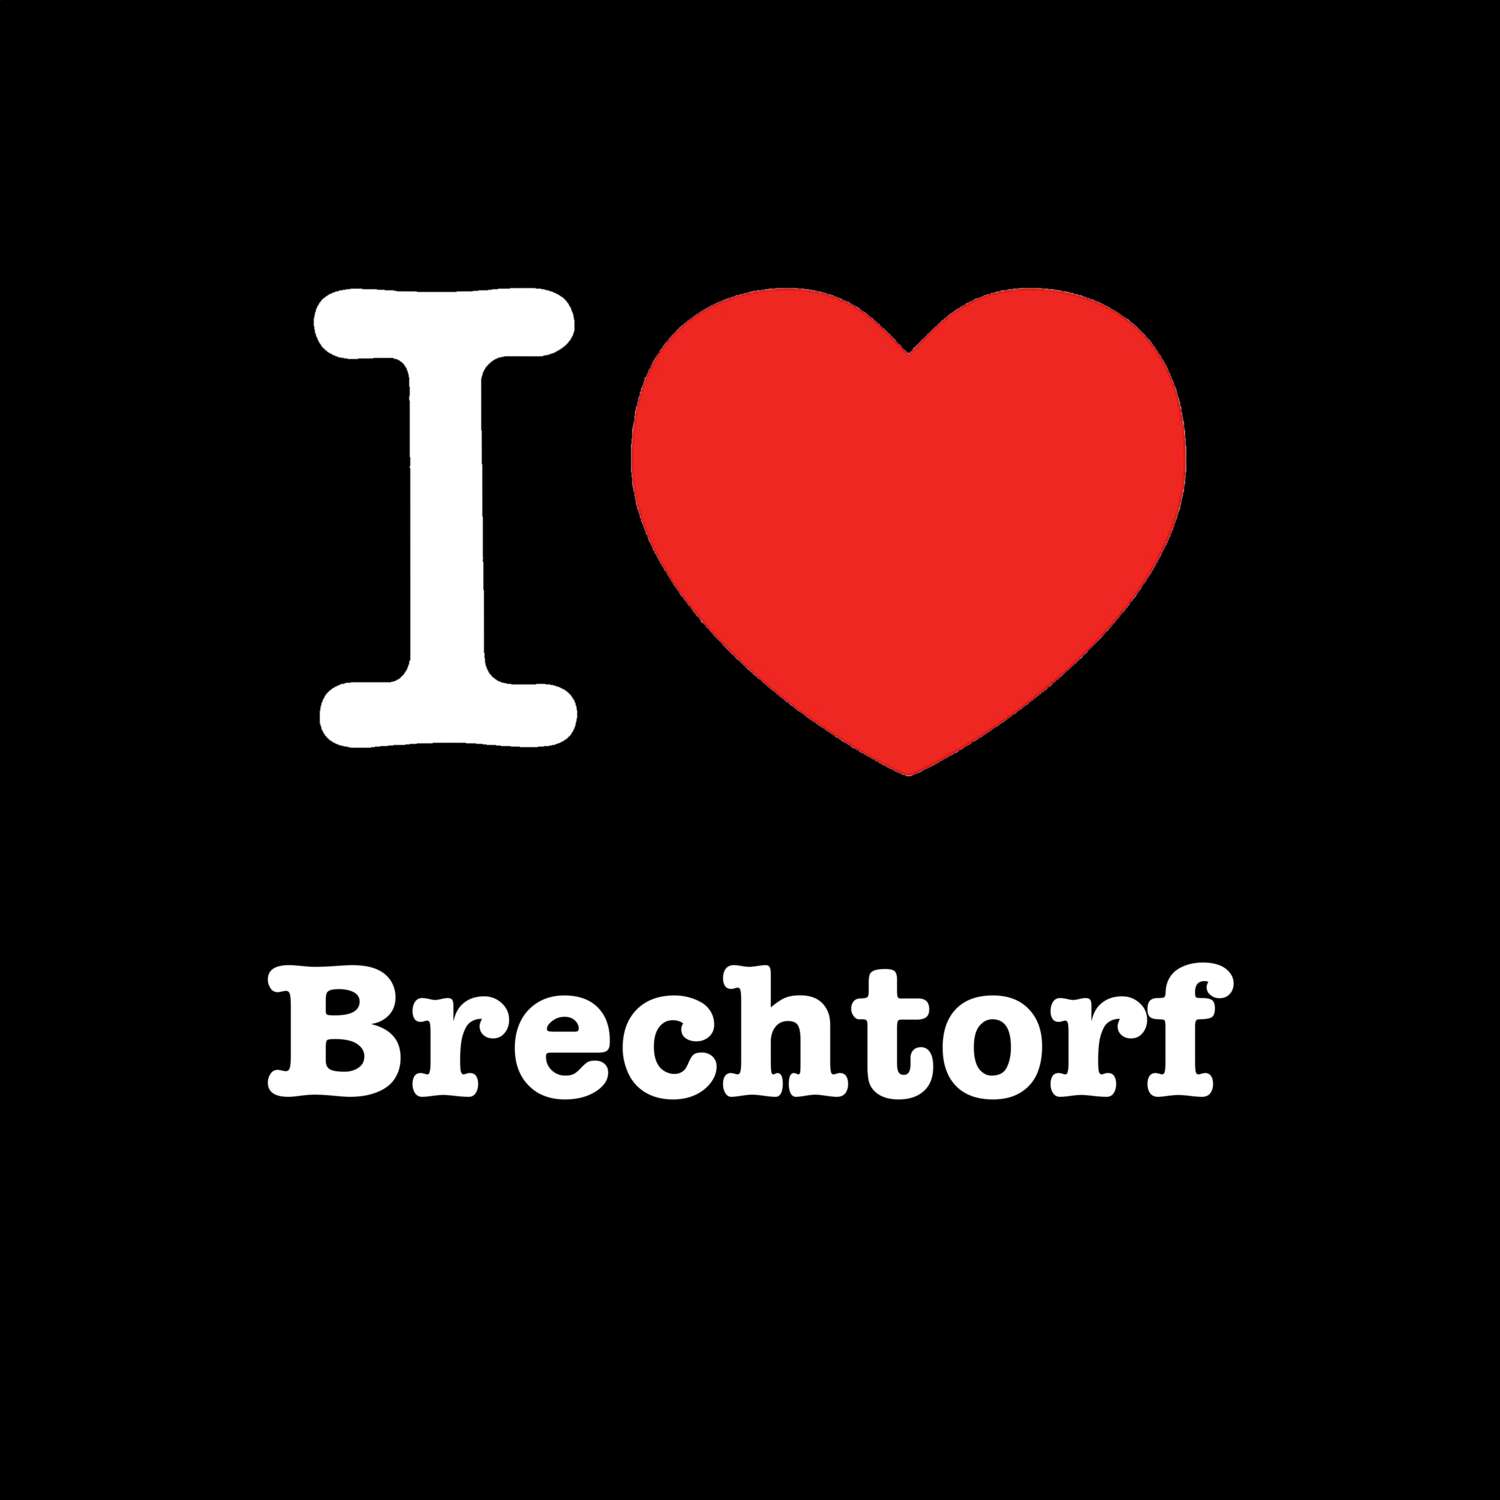 Brechtorf T-Shirt »I love«